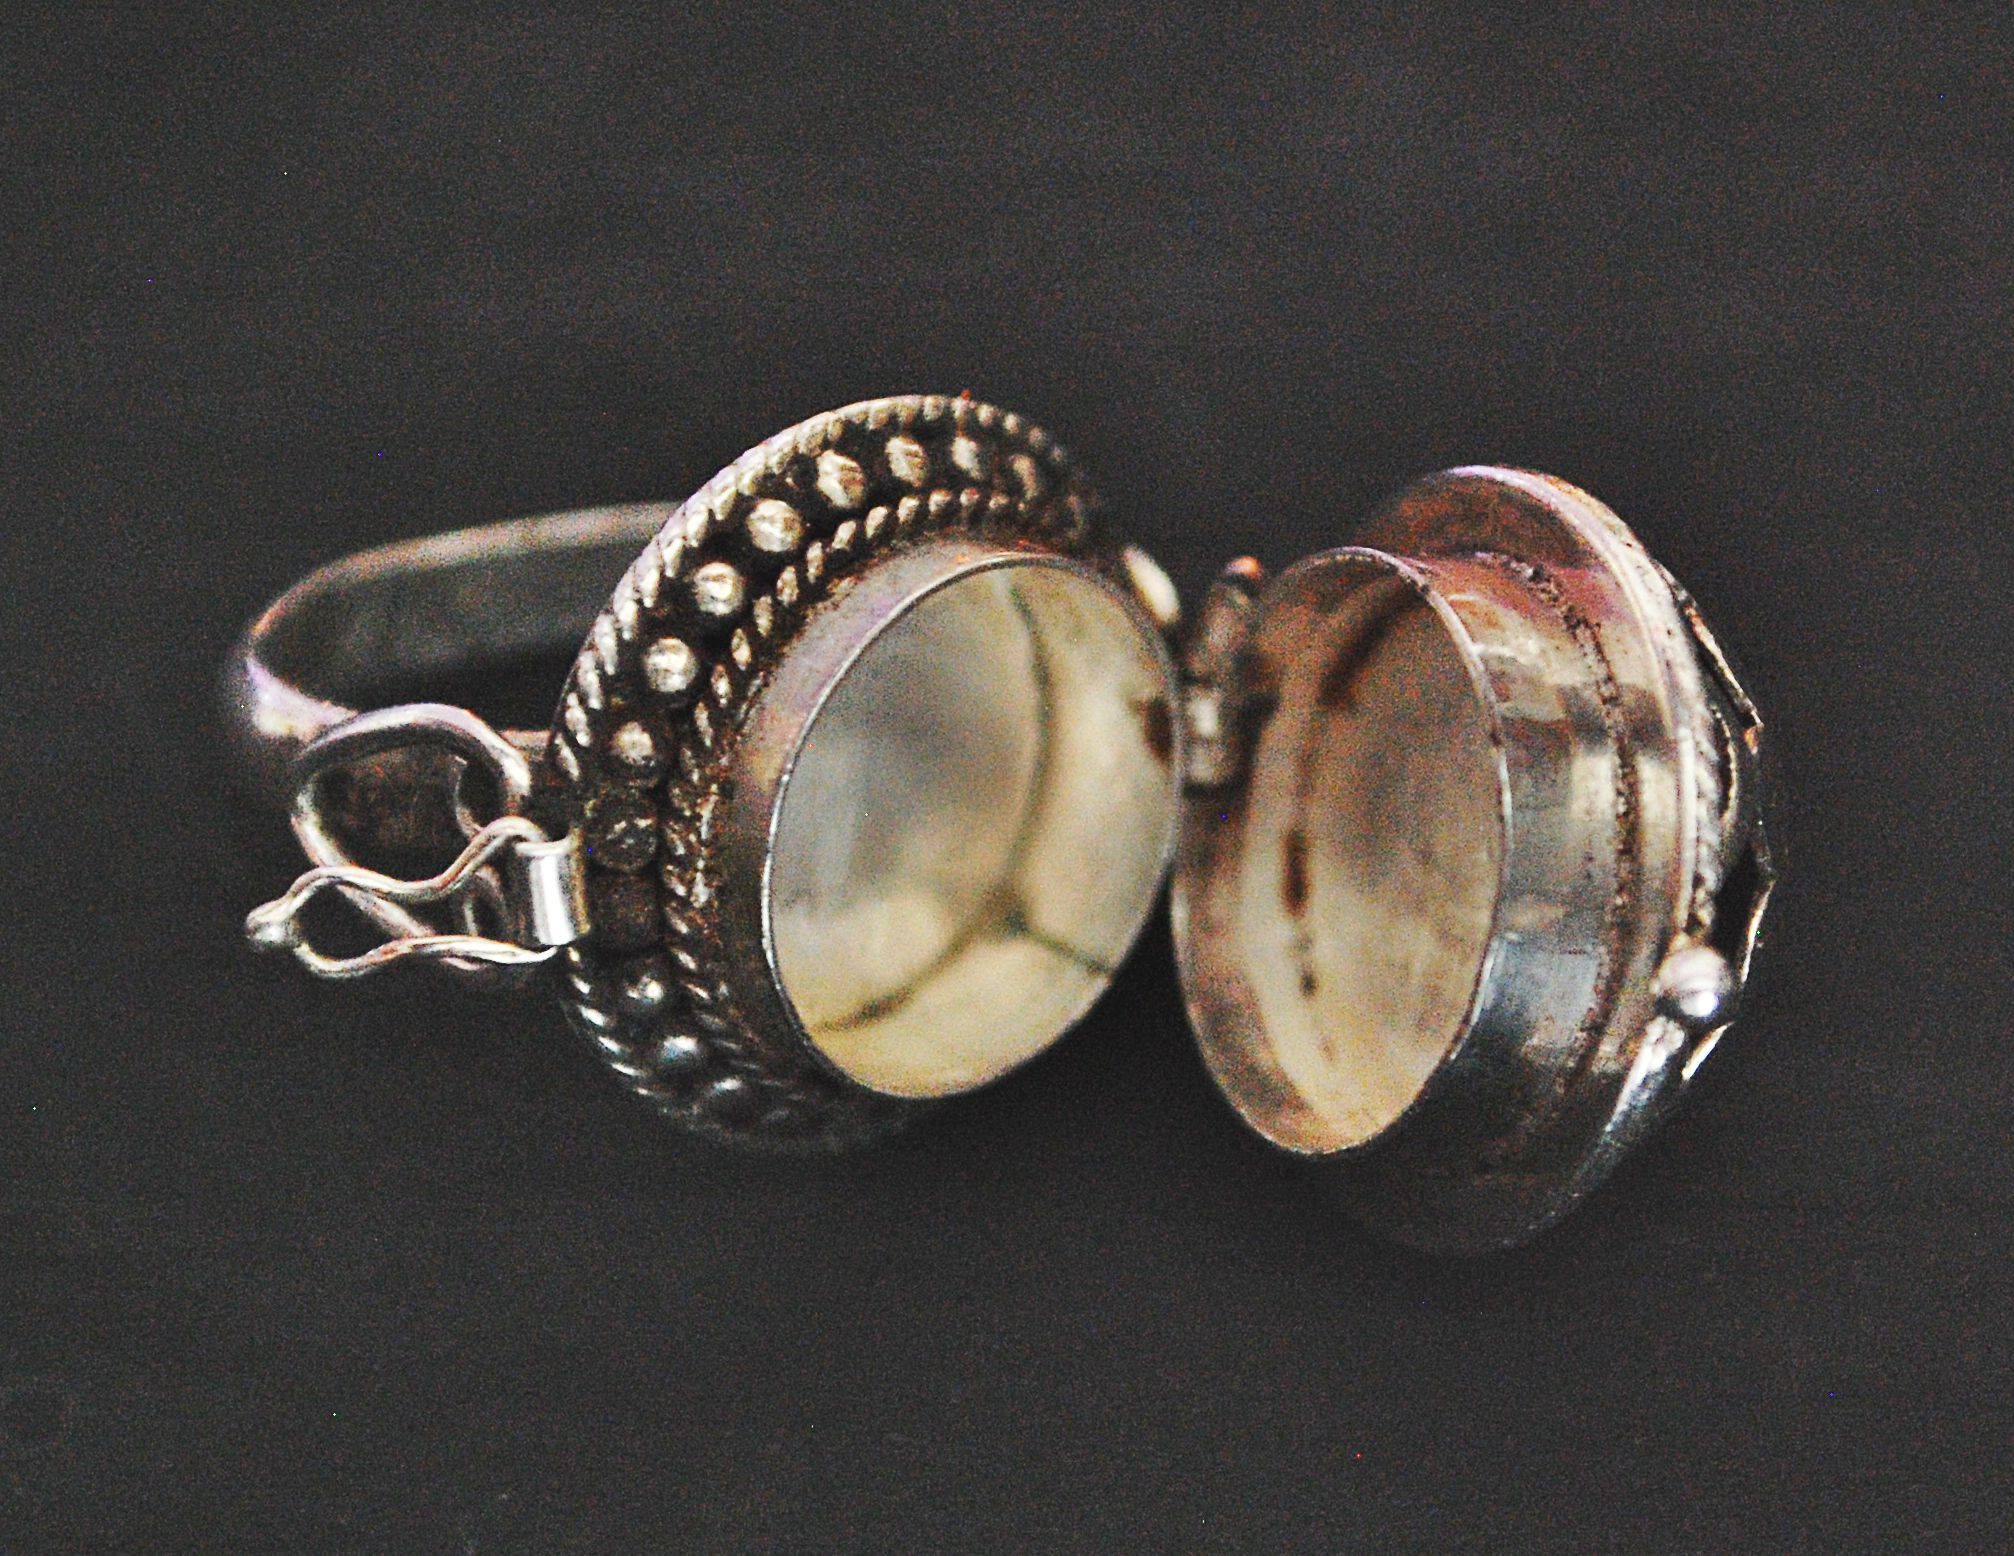 Rajasthan Silver Poison Ring - Size 6 - Rajasthani Ring - Rajasthan Jewellery - Rajasthan Silver - India Tribal Ring